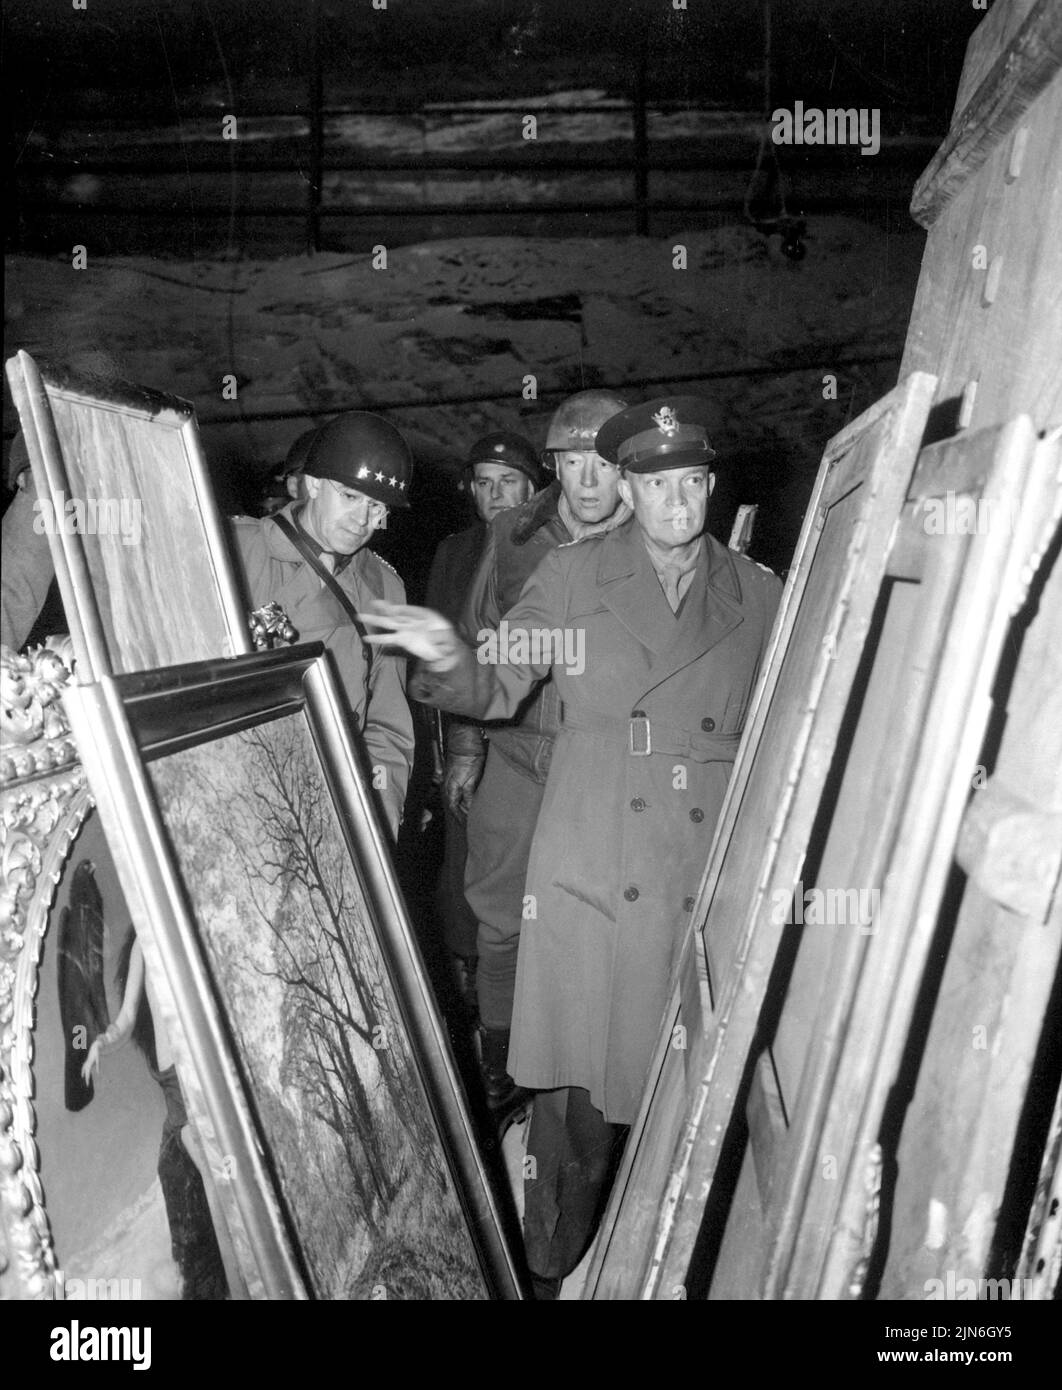 ALEMANIA - 12 de abril de 1945 - El general Dwight D Eisenhower, Comandante Supremo Aliado, acompañado por el general Omar N Bradley y el teniente general George S Patton Foto de stock